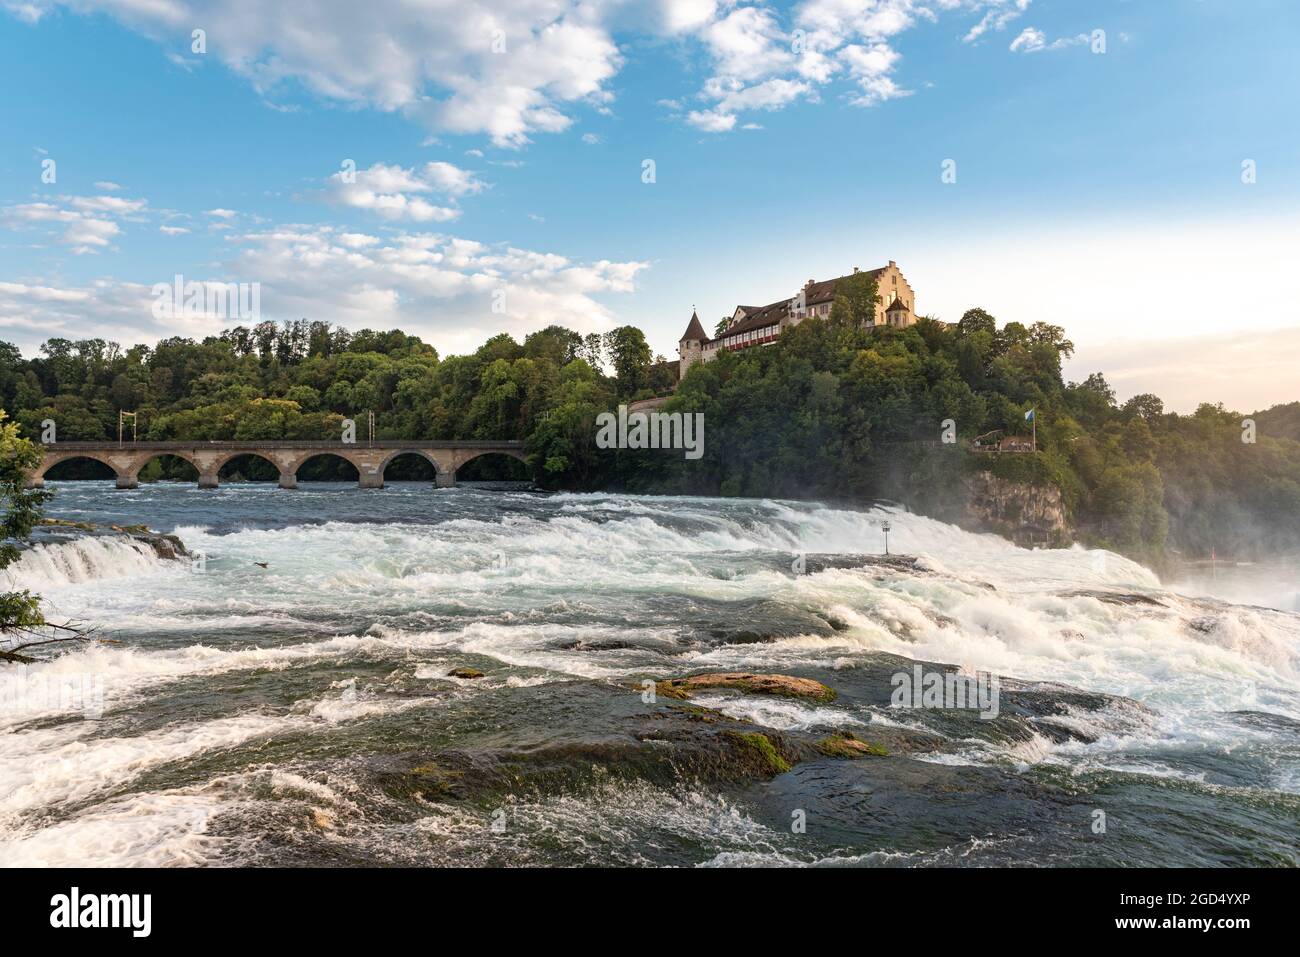 Géographie / Voyage, Suisse, Schaffhausen, Neuhausen, les chutes du Rhin avec le château de Laufen, DROITS-SUPPLÉMENTAIRES-AUTORISATION-INFO-NON-DISPONIBLE Banque D'Images